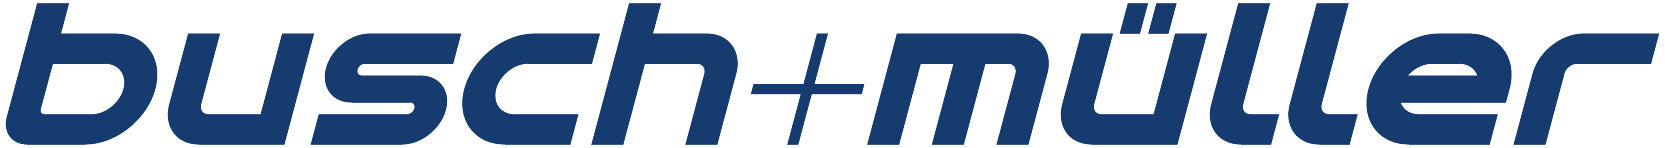 Busch & Muller Logo